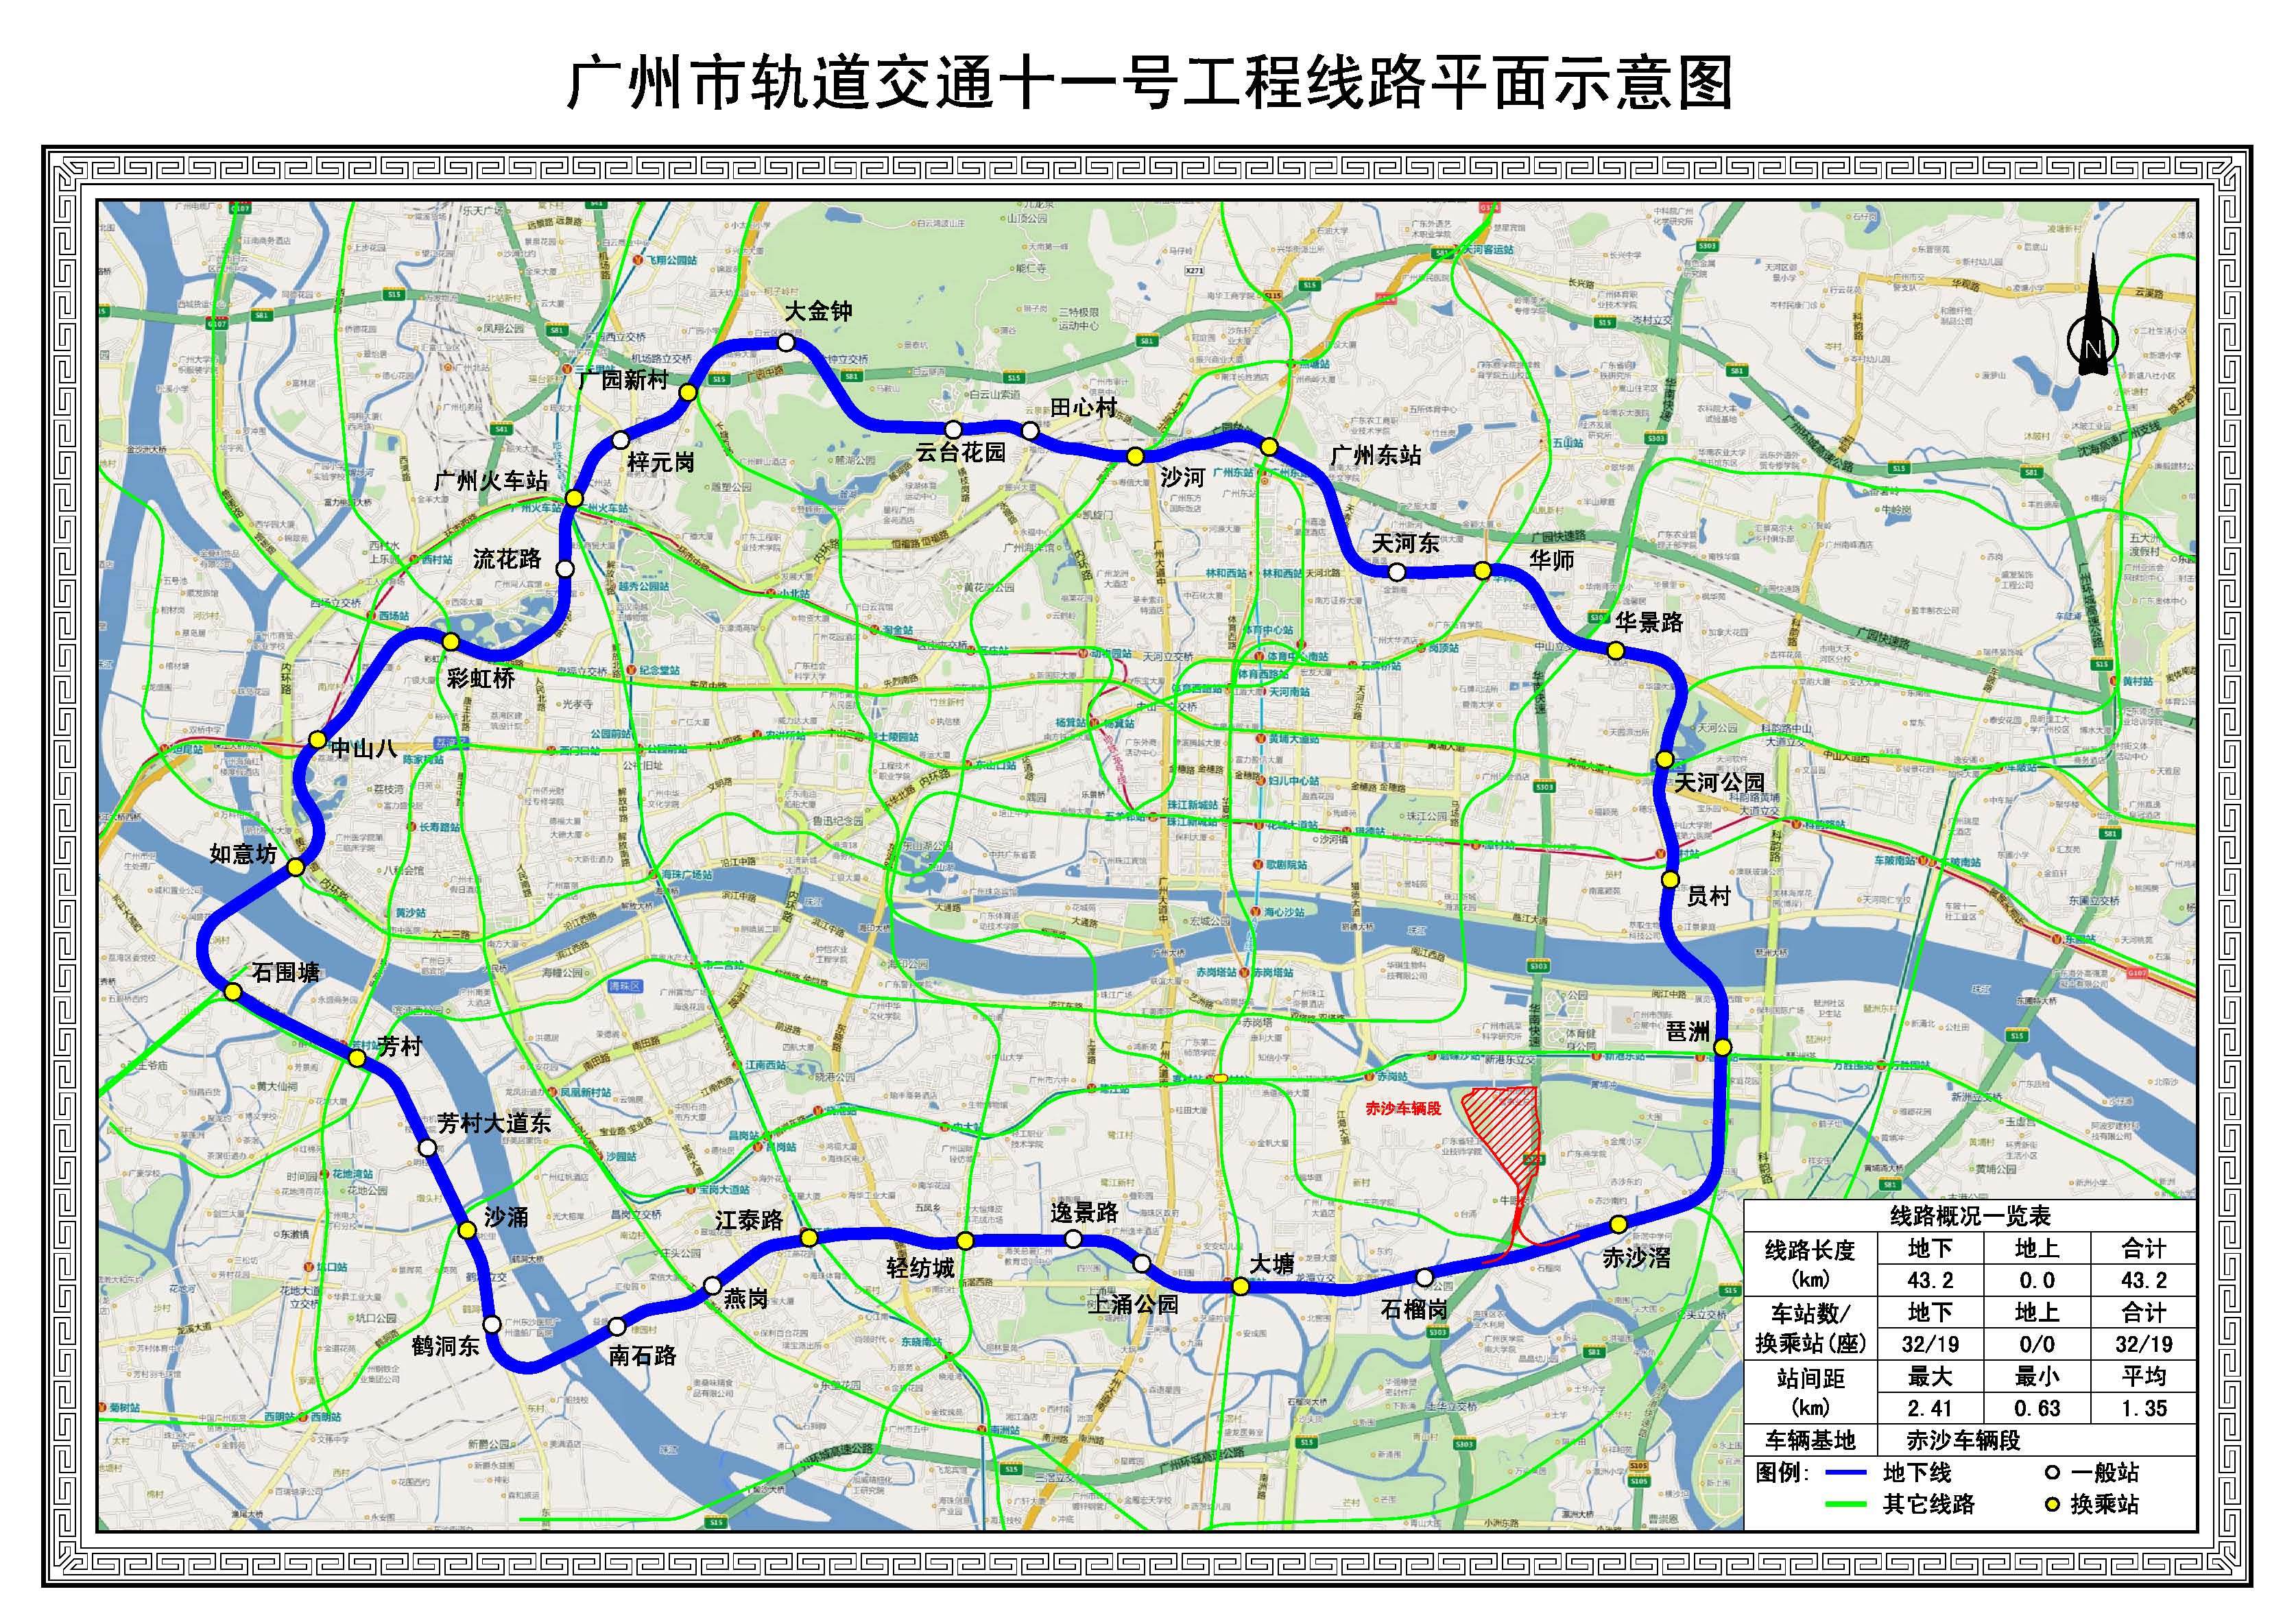 近一半新线绕不开番禺南沙!2020年广州地铁在建线路盘点